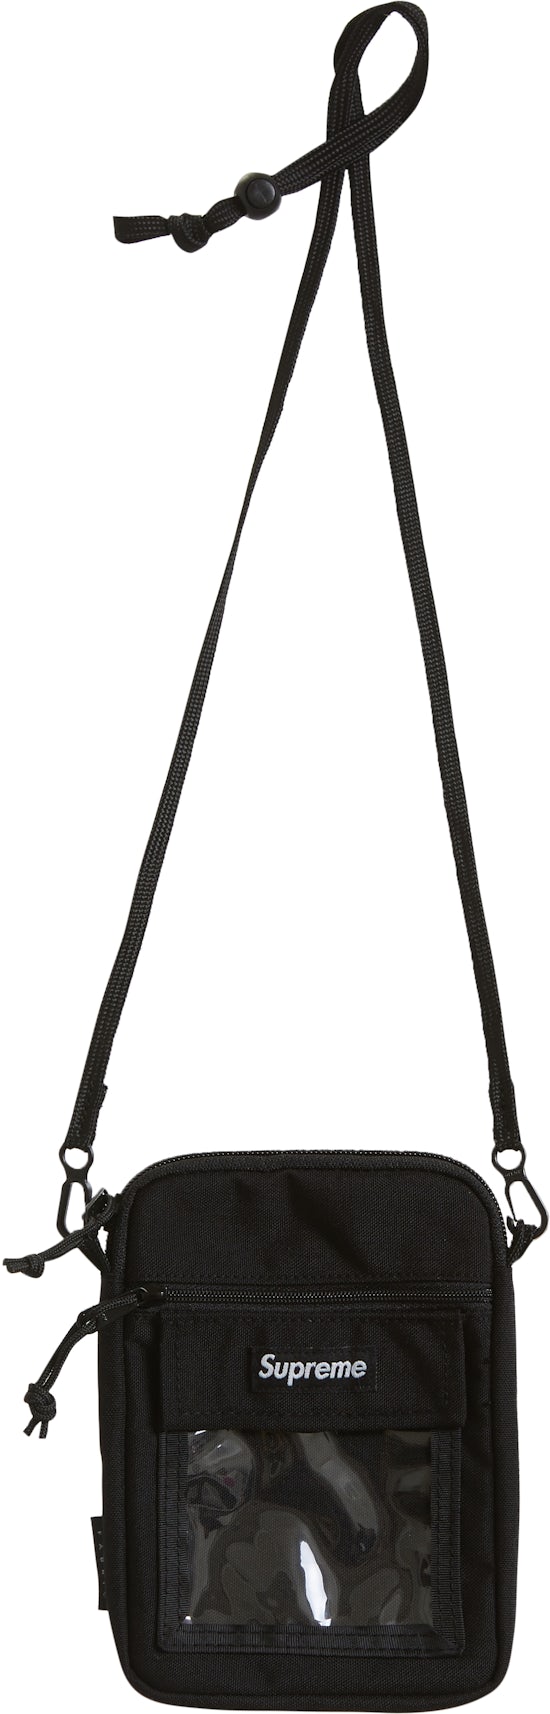 Deluxe Black Filigree Utility Tote Bag